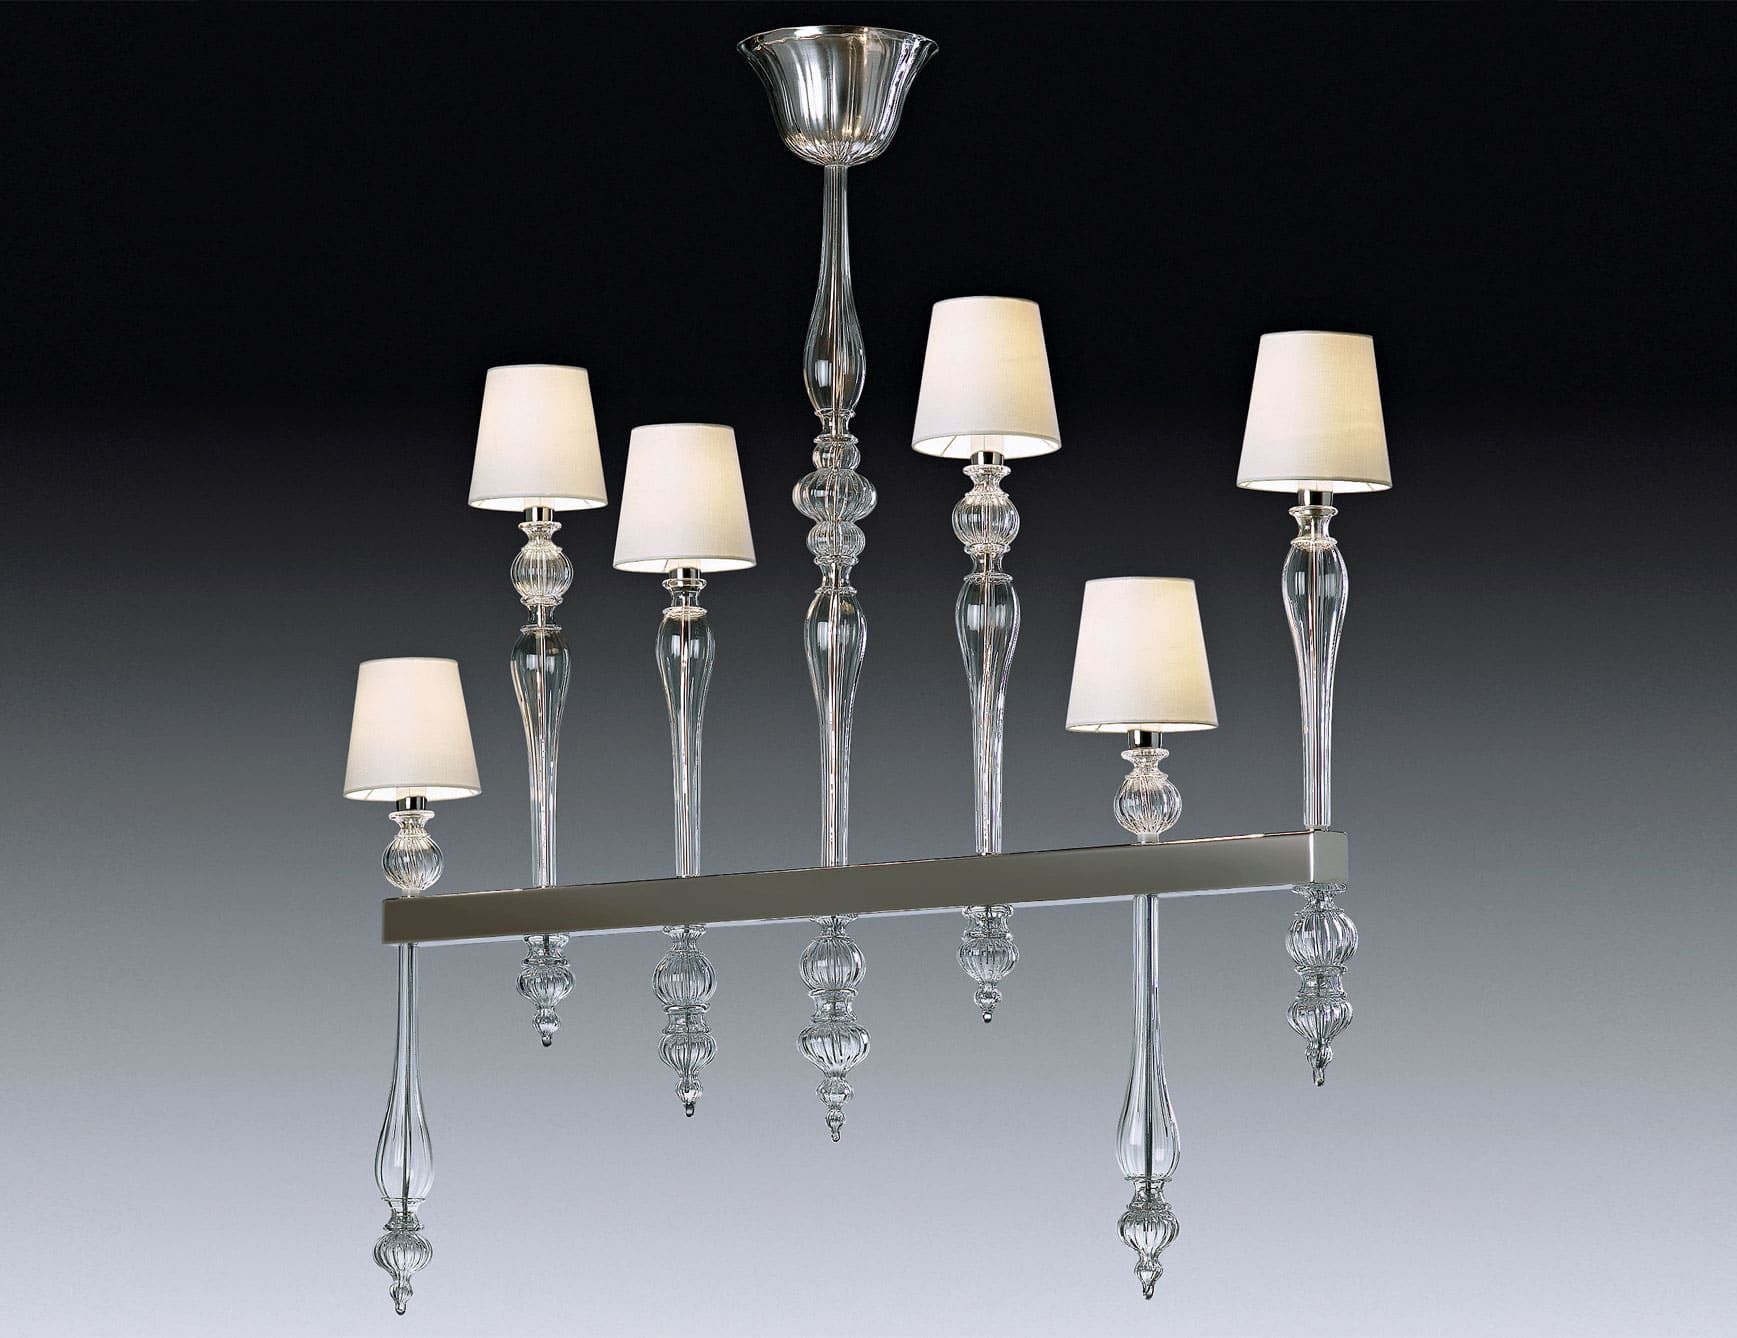 Dandy modern Italian chandelier with clear glass